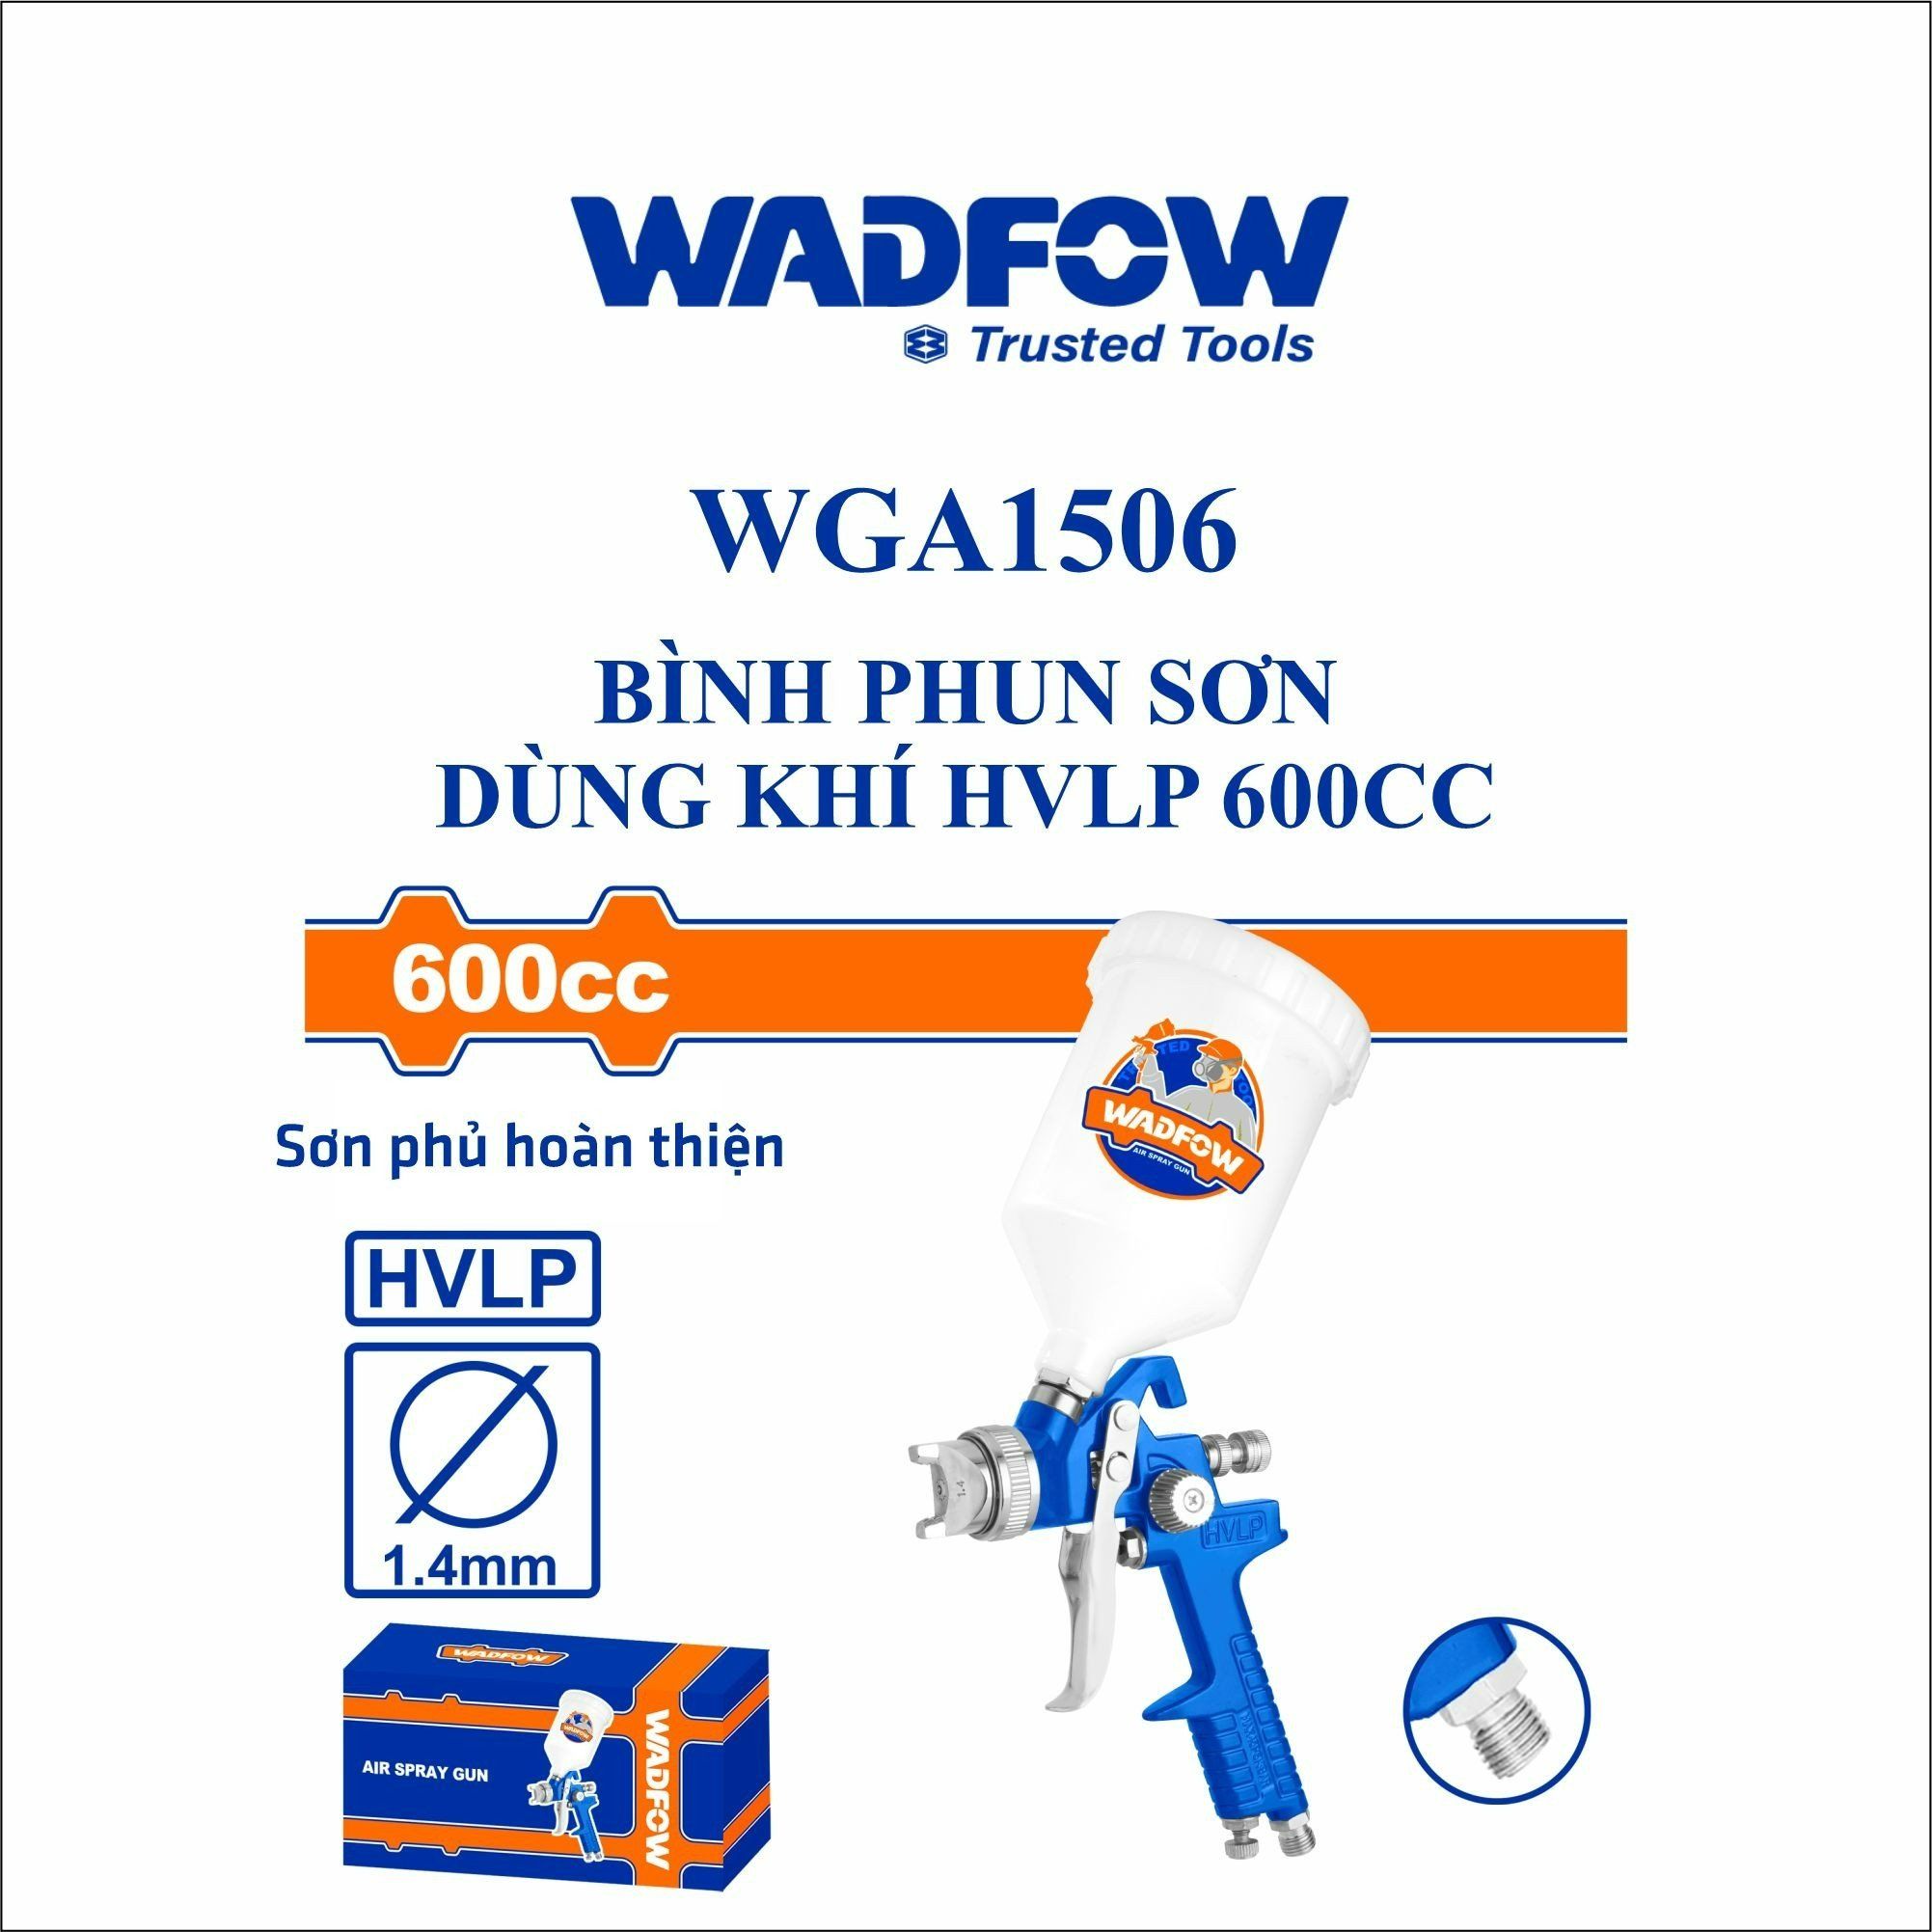  Bình phun sơn dùng hơi  HVLP 600cc WADFOW WGA1506 